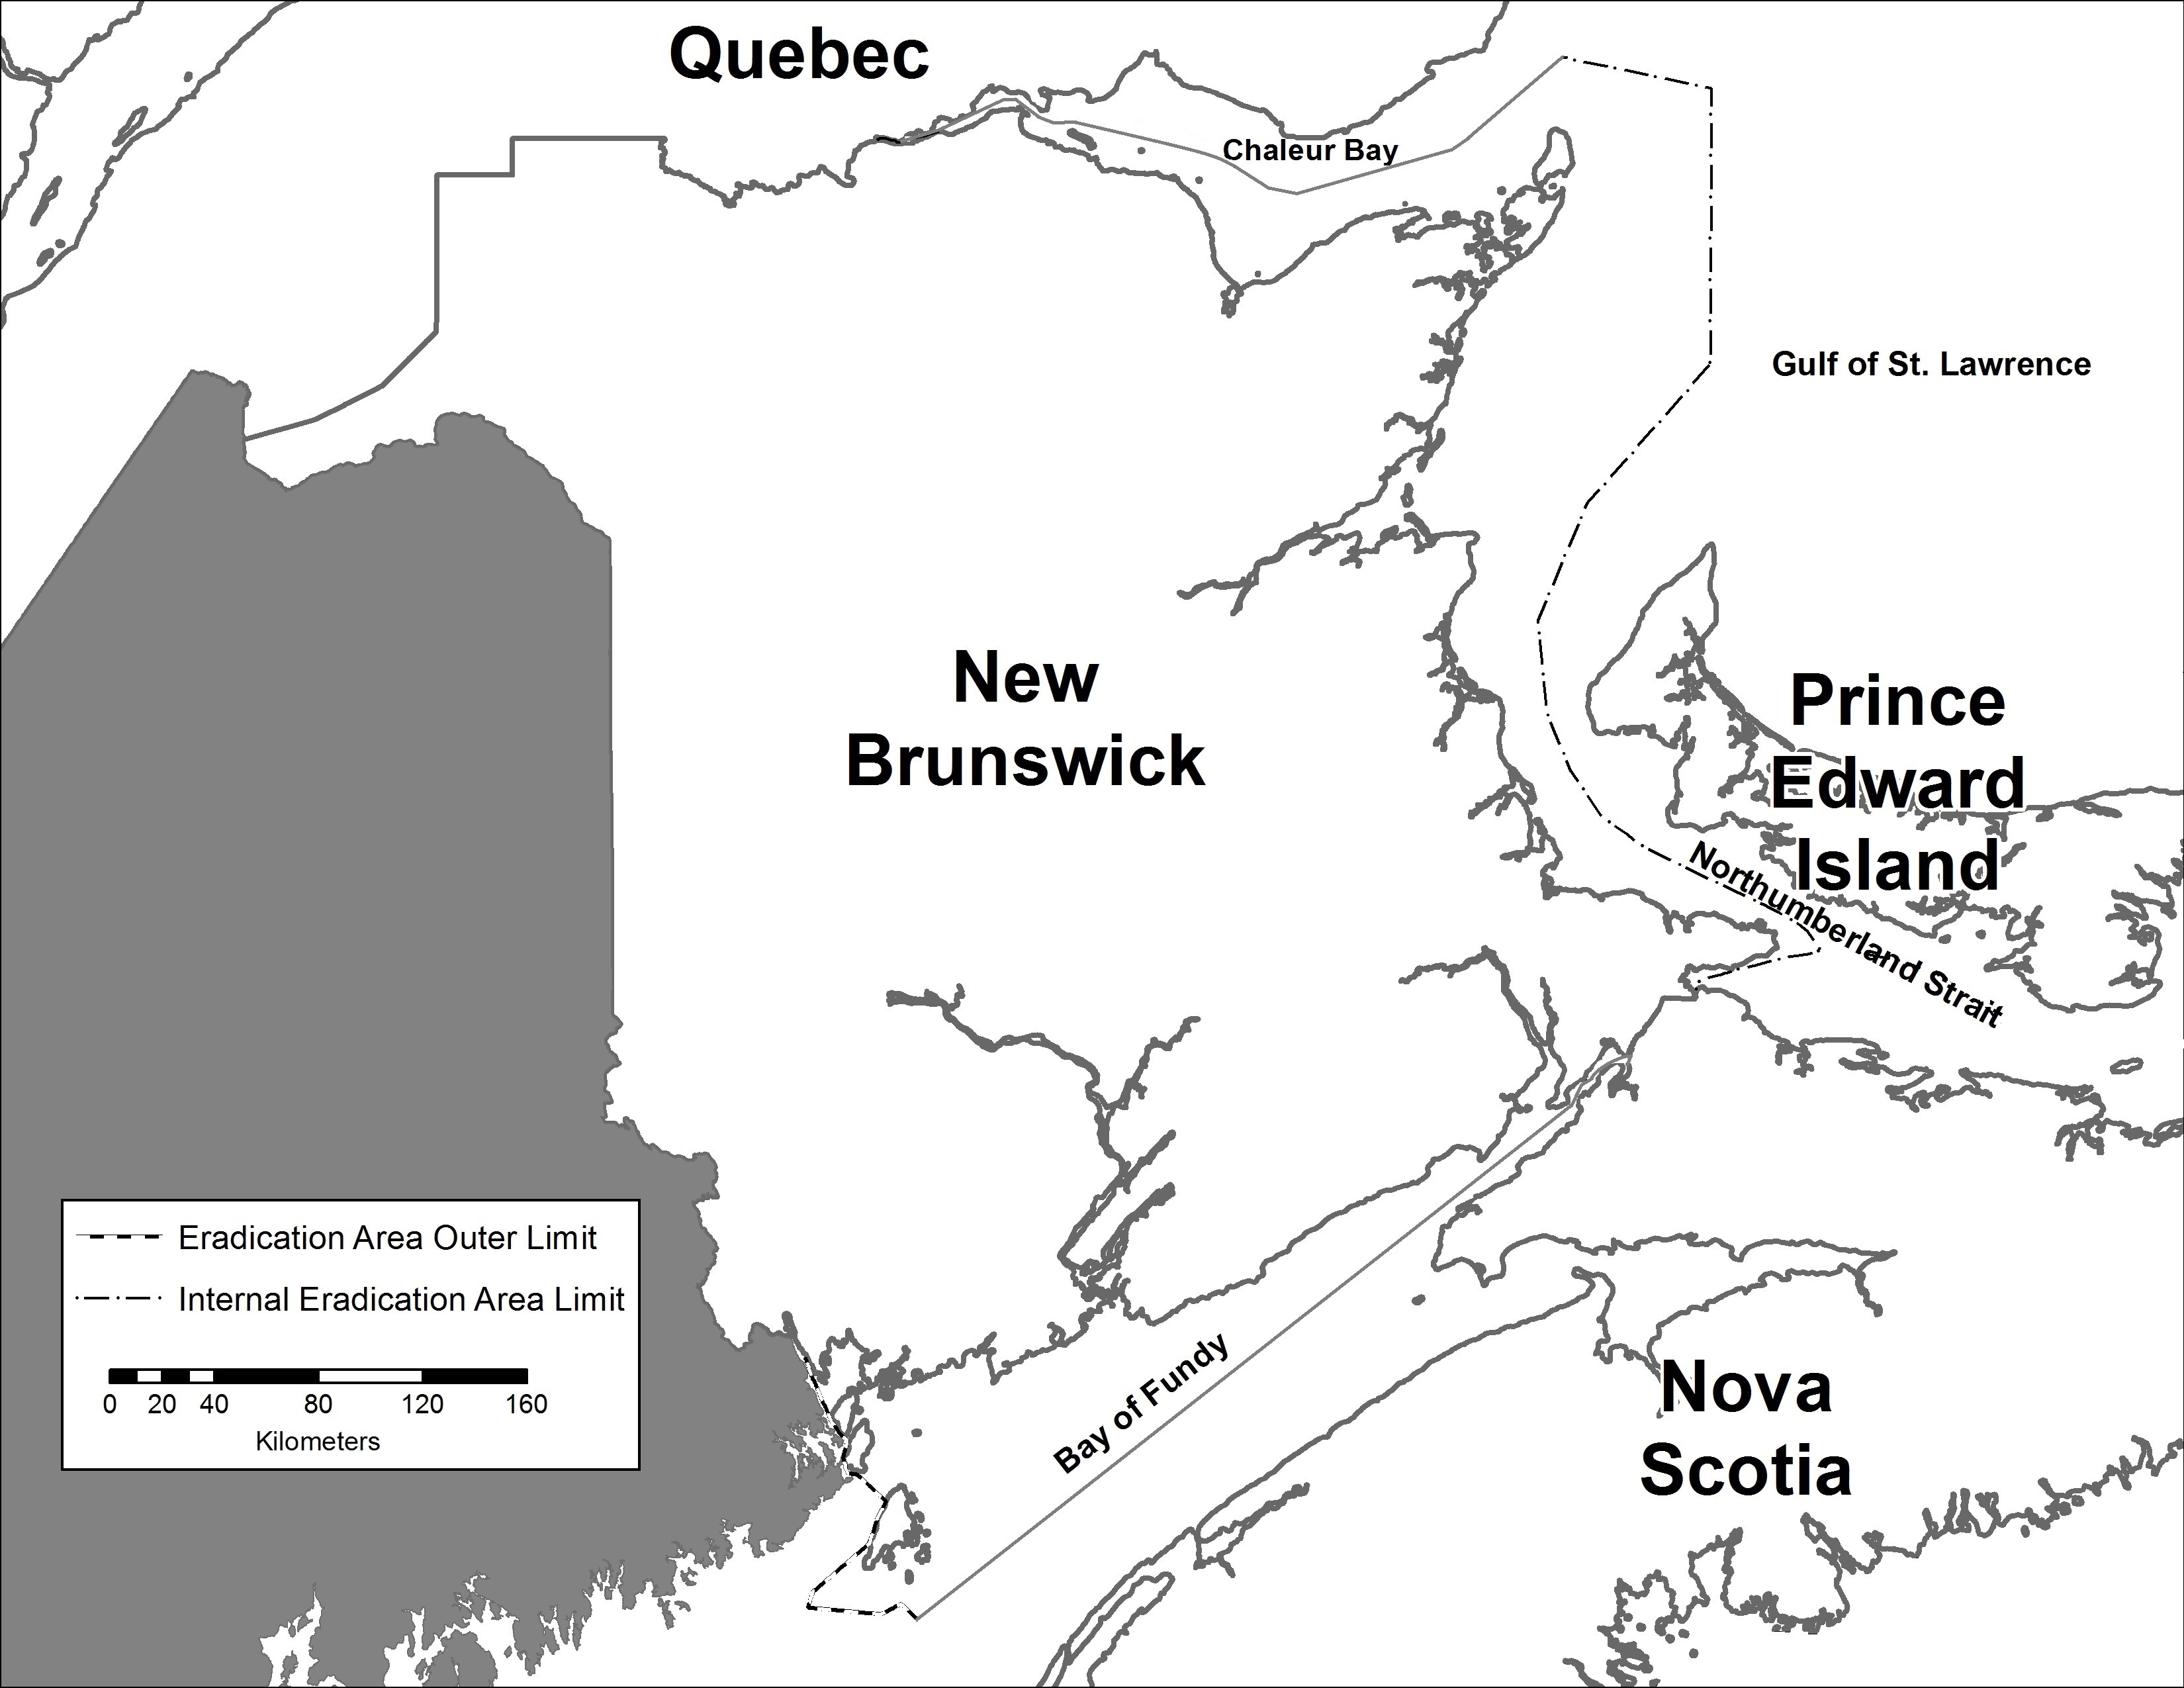 New Brunswick map. Description follows.